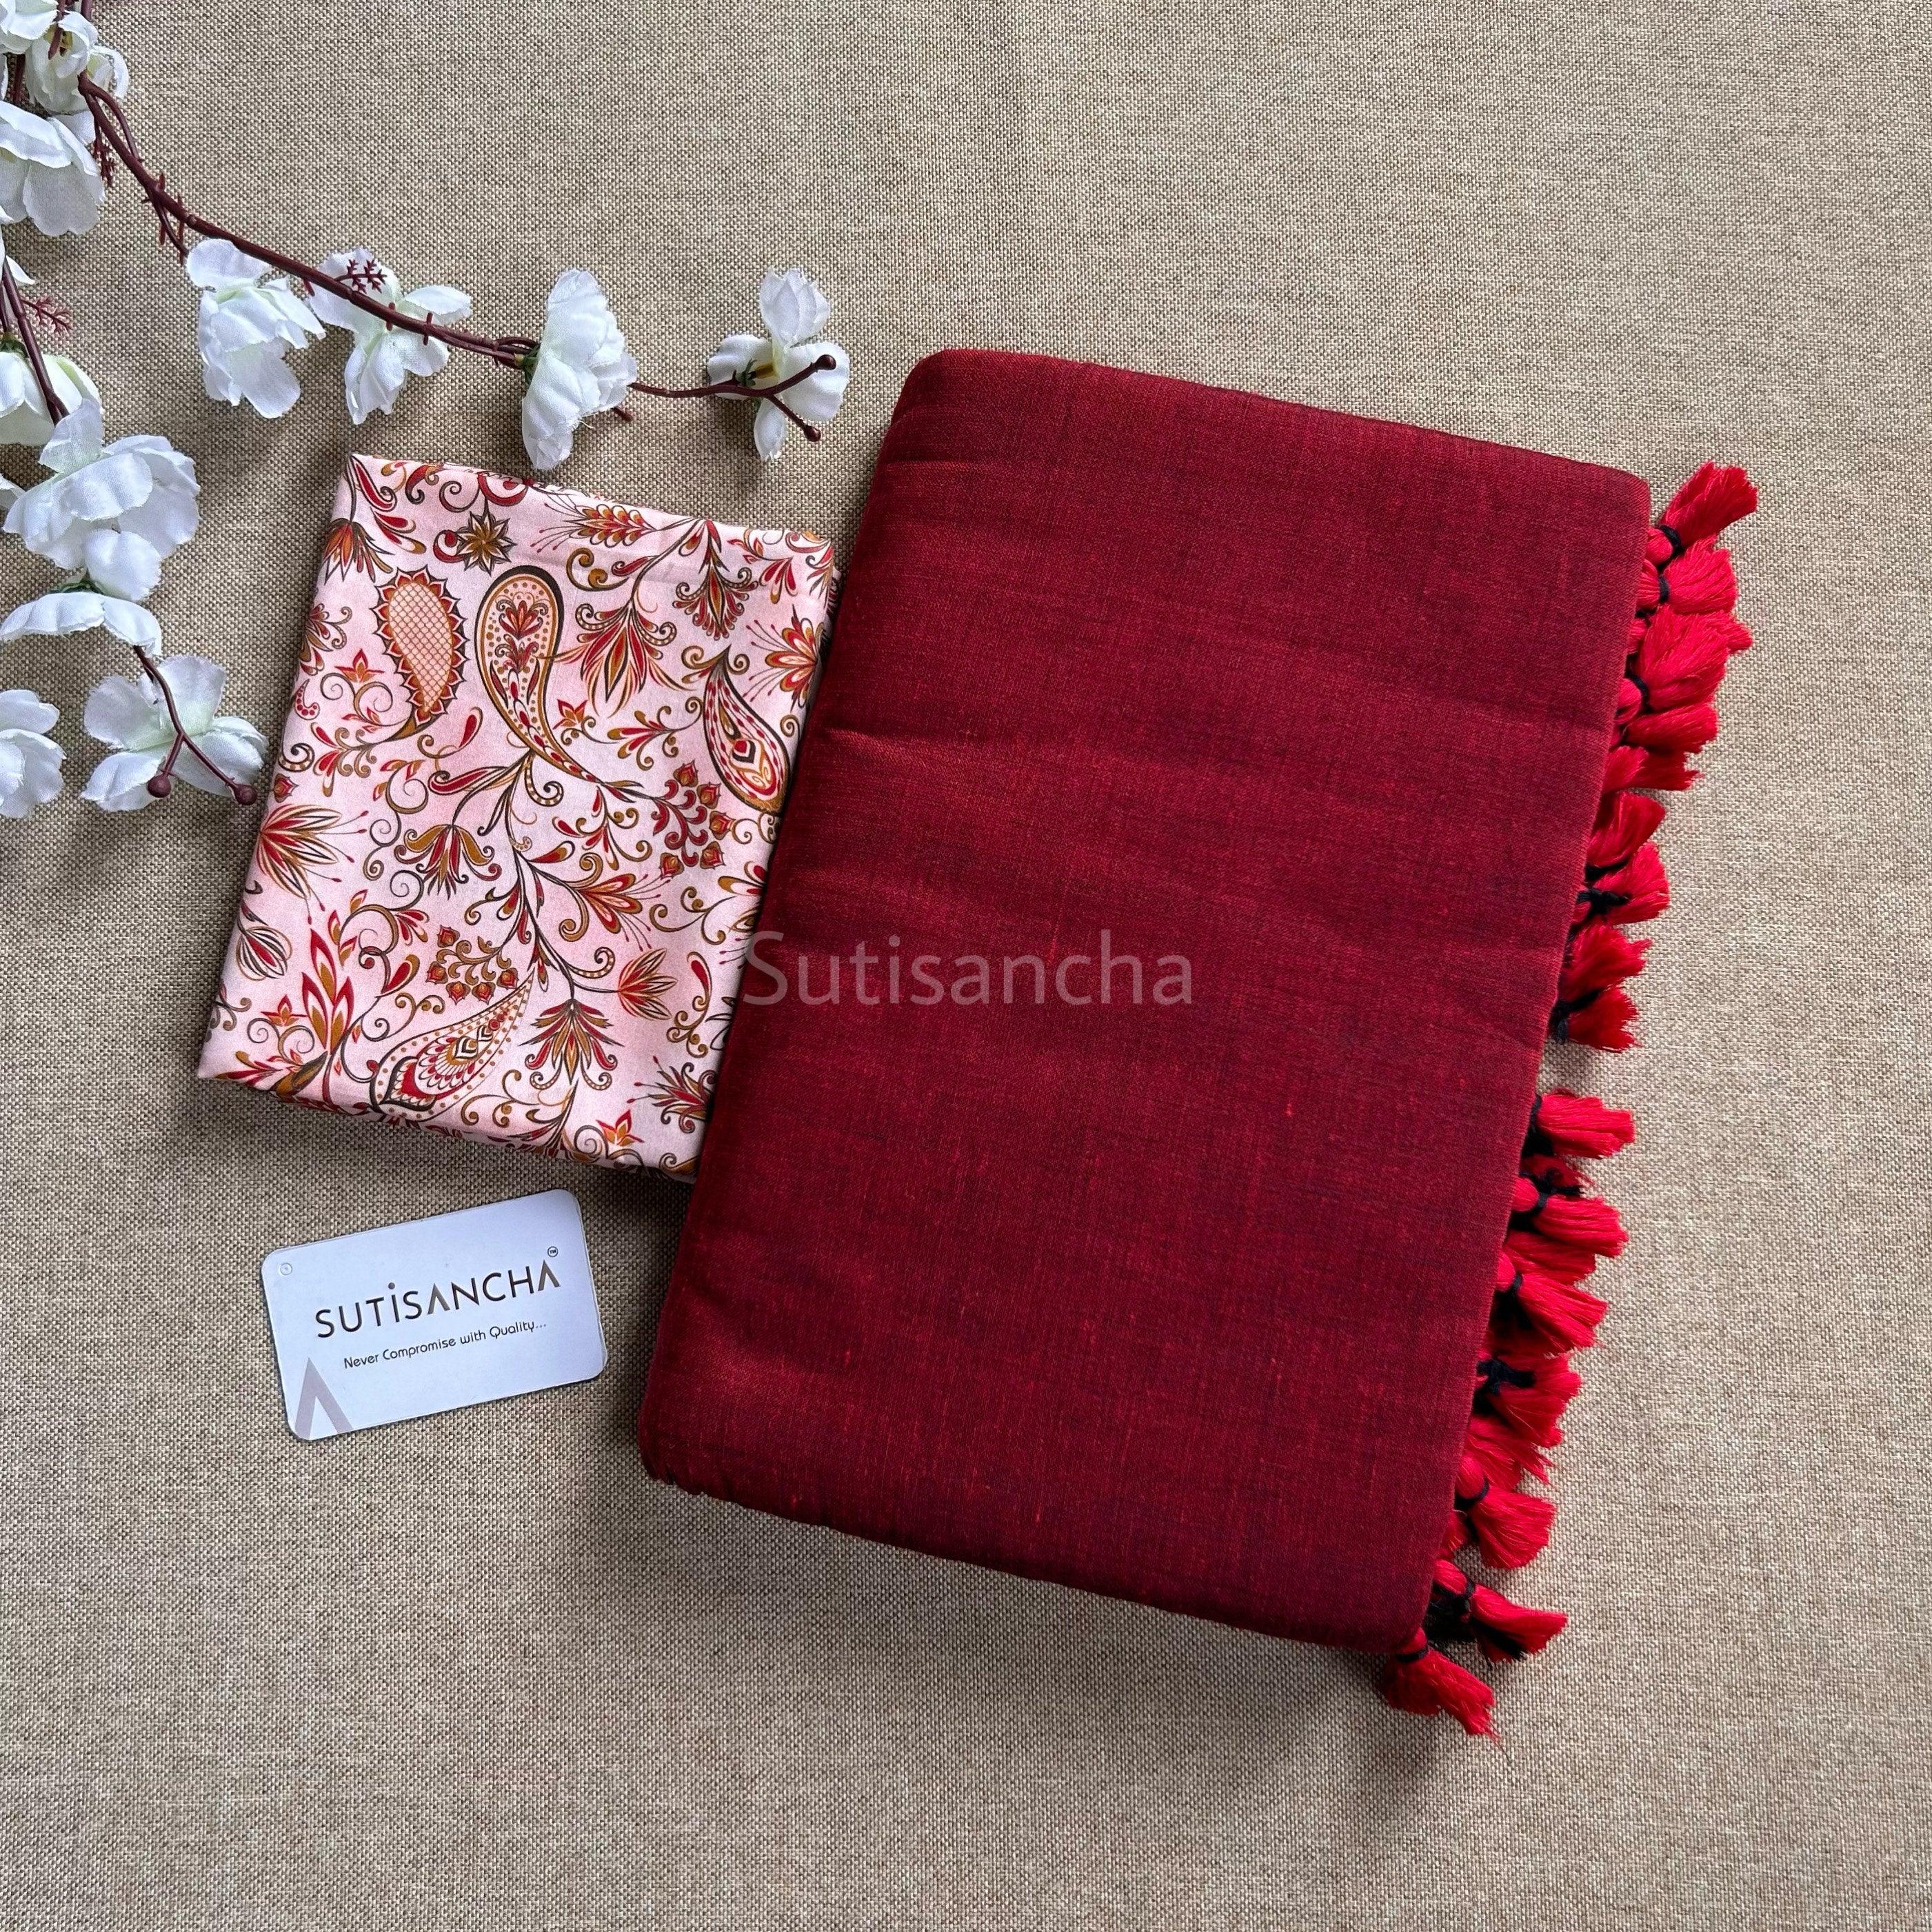 Sutisancha CherryRed Handloom Cotton Saree - Suti Sancha